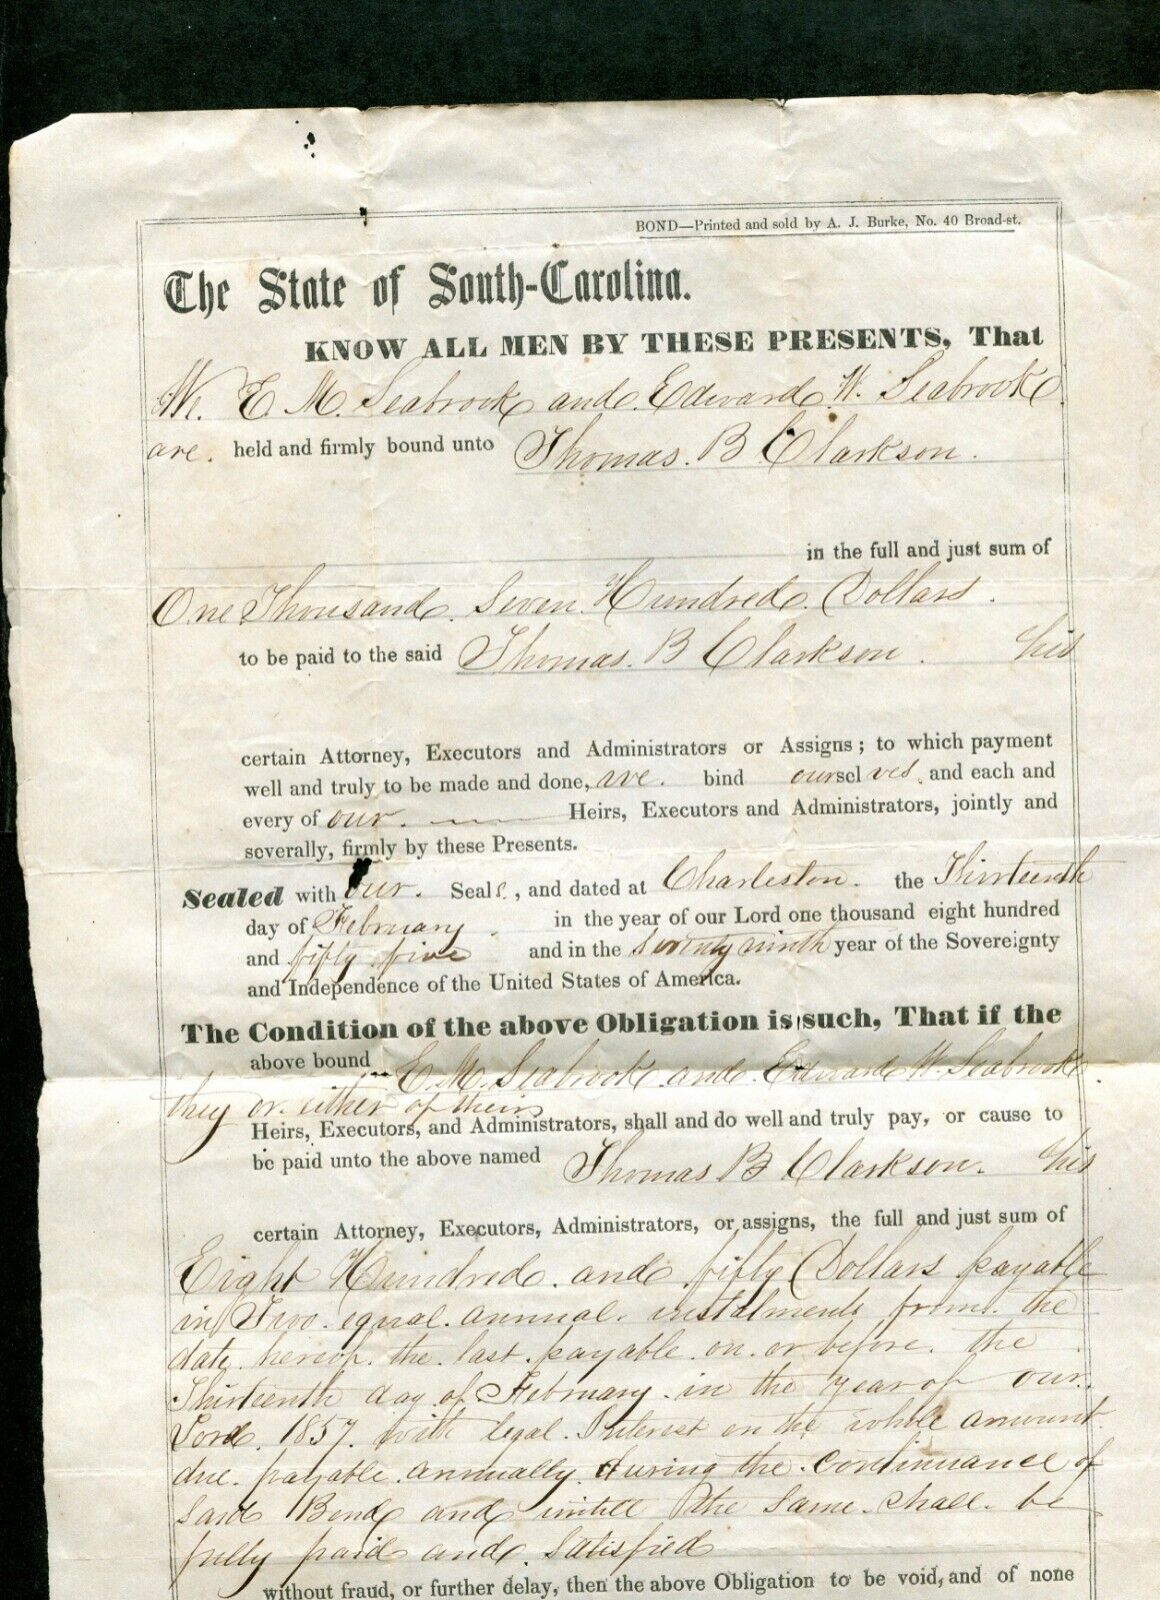 1855 BOND E M SEABROOK & EDWARD W SEABROOK TO THOMAS B CLARKSON $1700 CHARLESTON